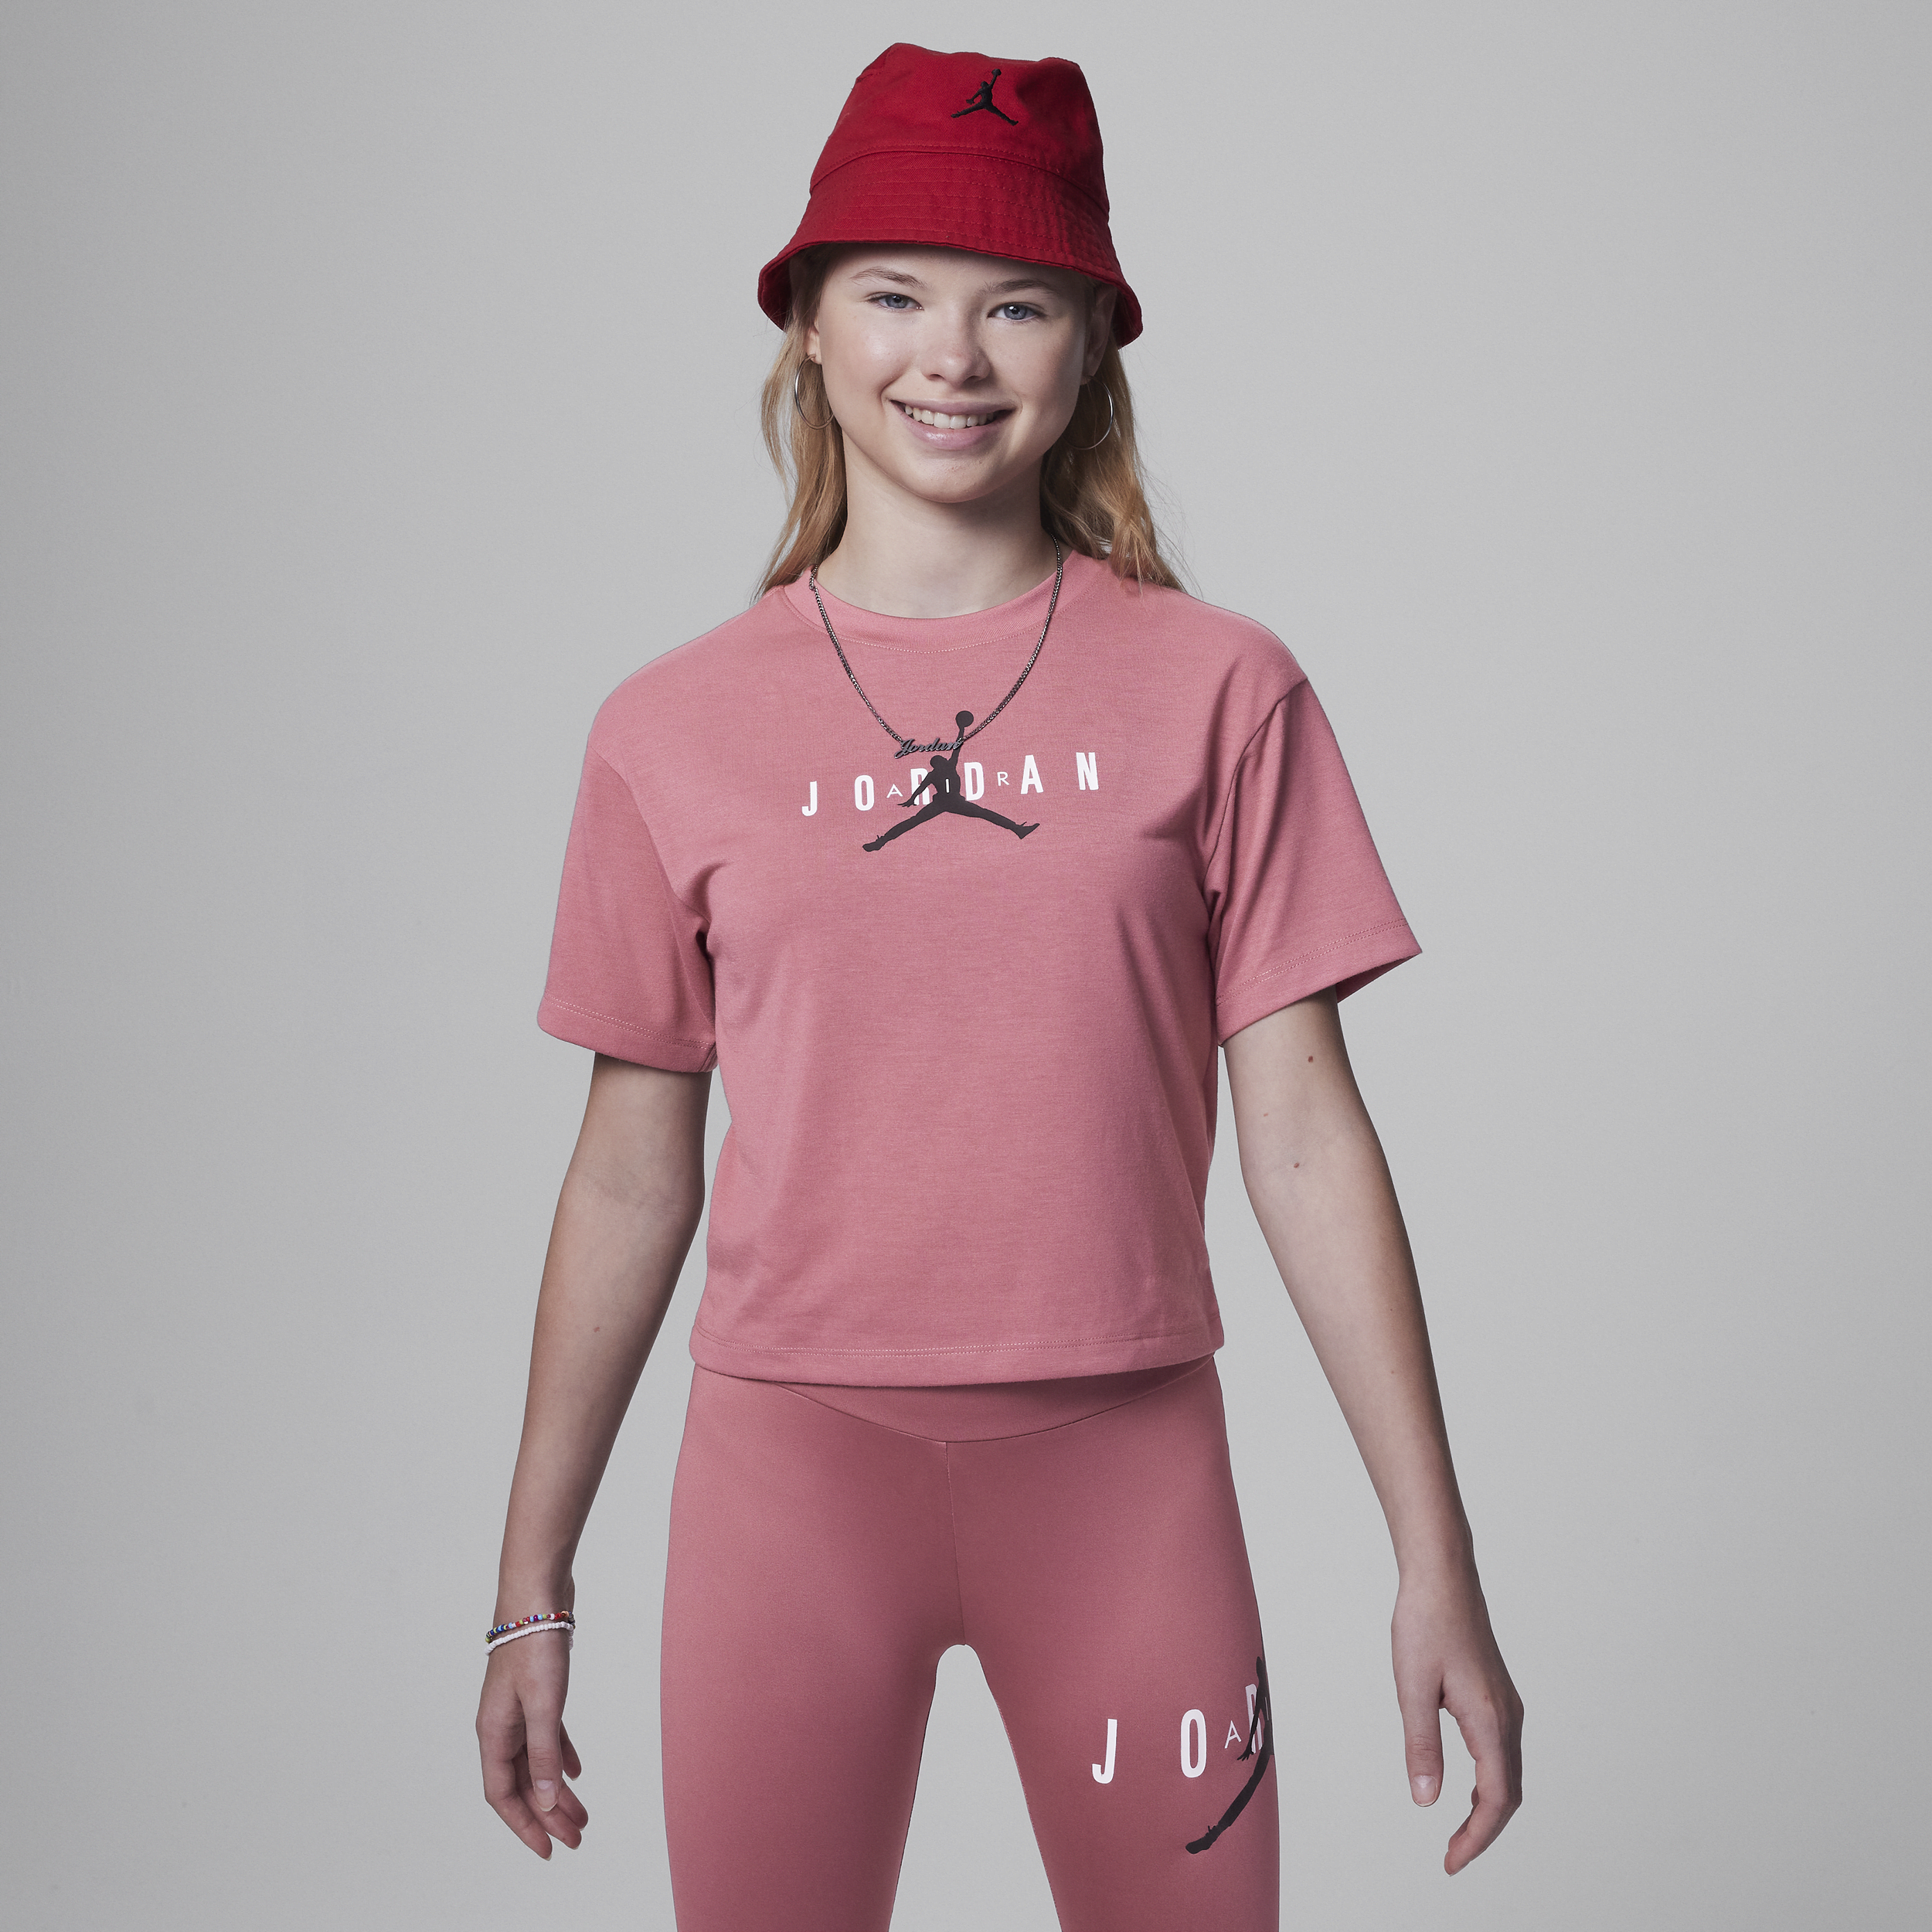 Jordan T-shirt voor kids - Roze